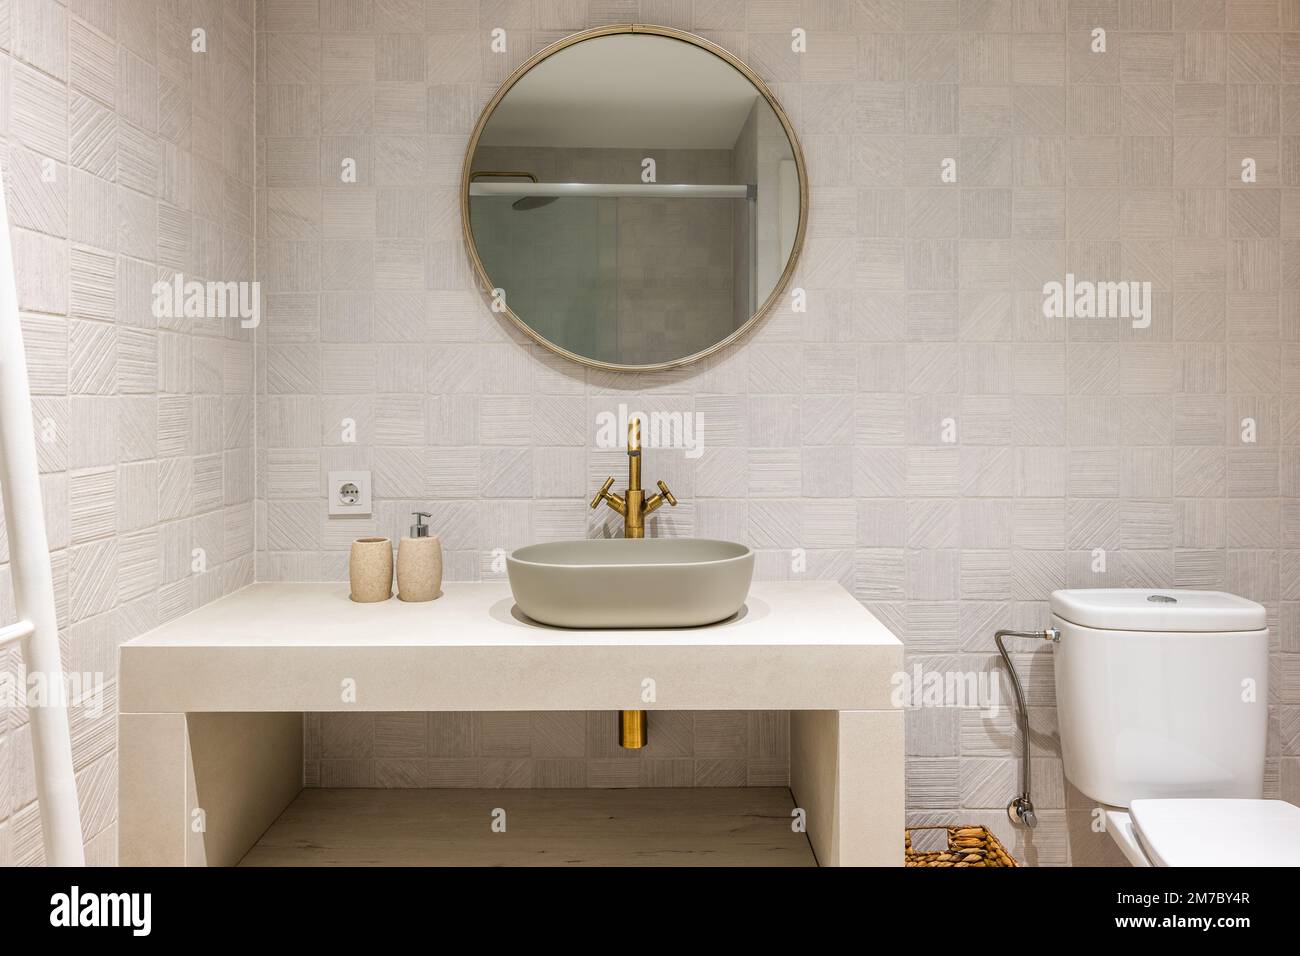 Salle de bain magnifiquement conçue et lumineuse, tons pastel, touches de cuivre et de métal. Douche avec cloison en verre Banque D'Images